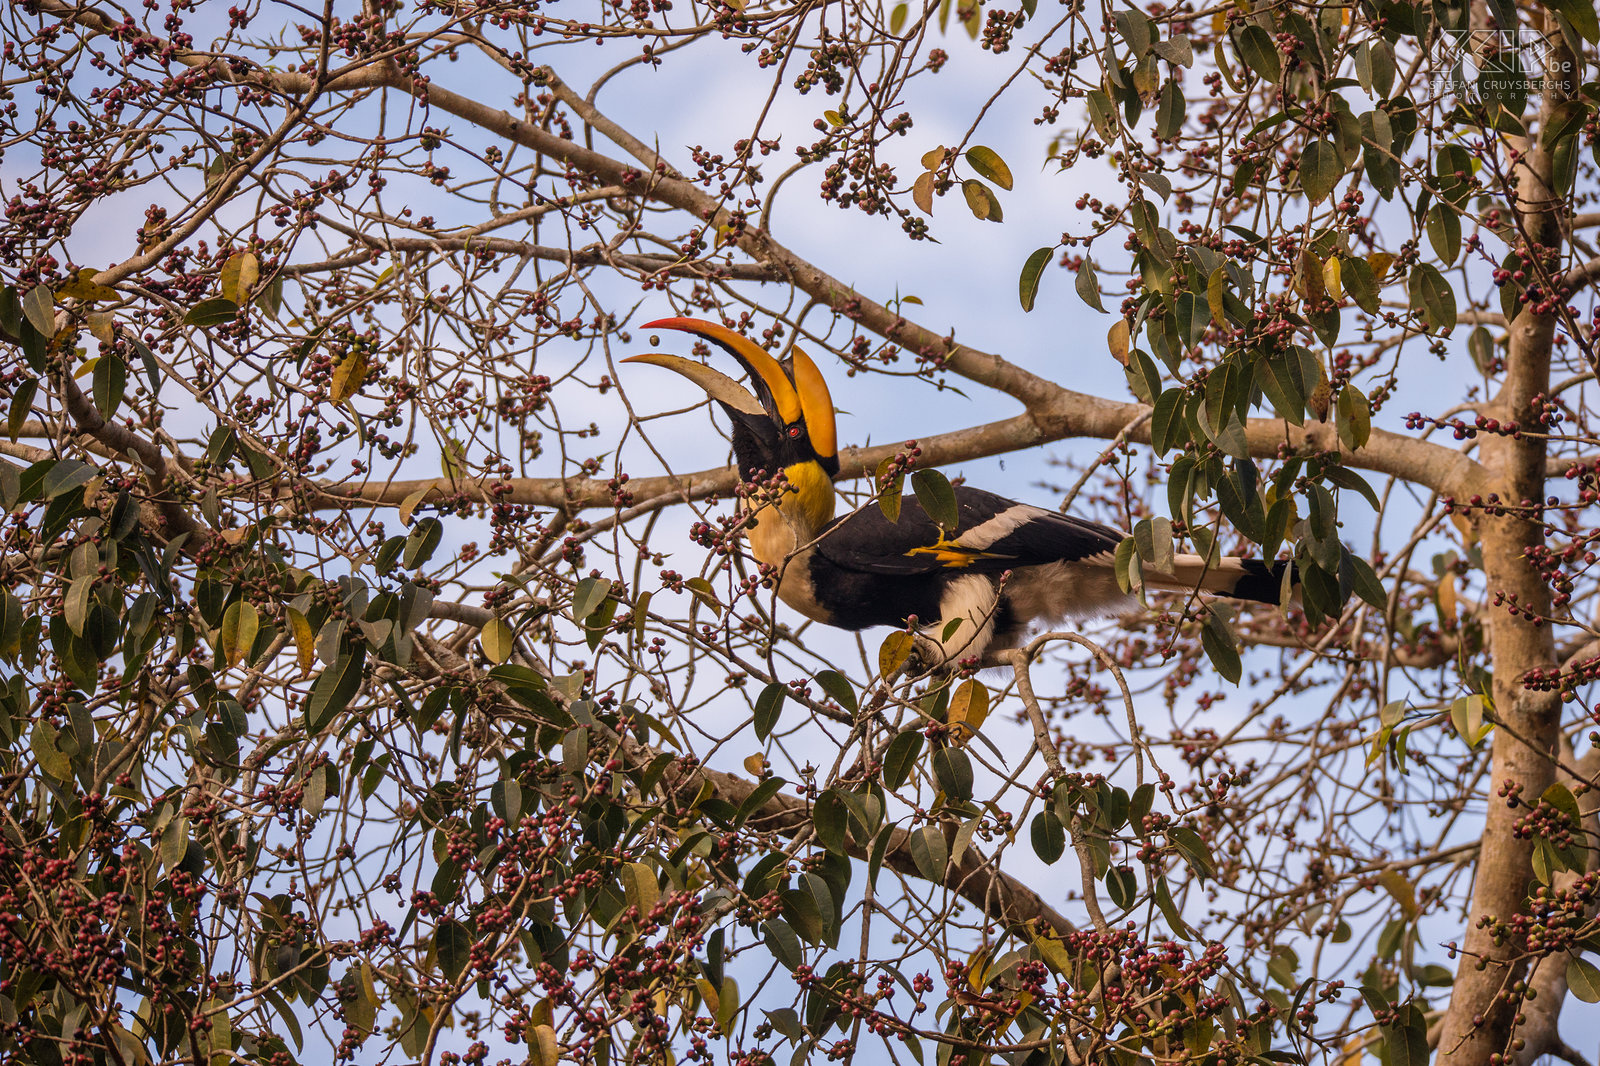 Valparai - Dubbelhoornige neushoornvogel In de groene wouden rondom de theevelden van Valparai is er ook heel veel wildlife en het is een uitstekende locatie om unieke dieren te zien. De Dubbelhoornige neushoornvogel (Great Indian hornbill, Buceros bicornis) is de grootste neushoornvogel in het zuiden van India. Ze eten overwegend vruchten maar ook kleine zoogdieren, reptielen en vogels. Ze kunnen 95-130cm lang worden met een spanwijdte van 150cm. Stefan Cruysberghs